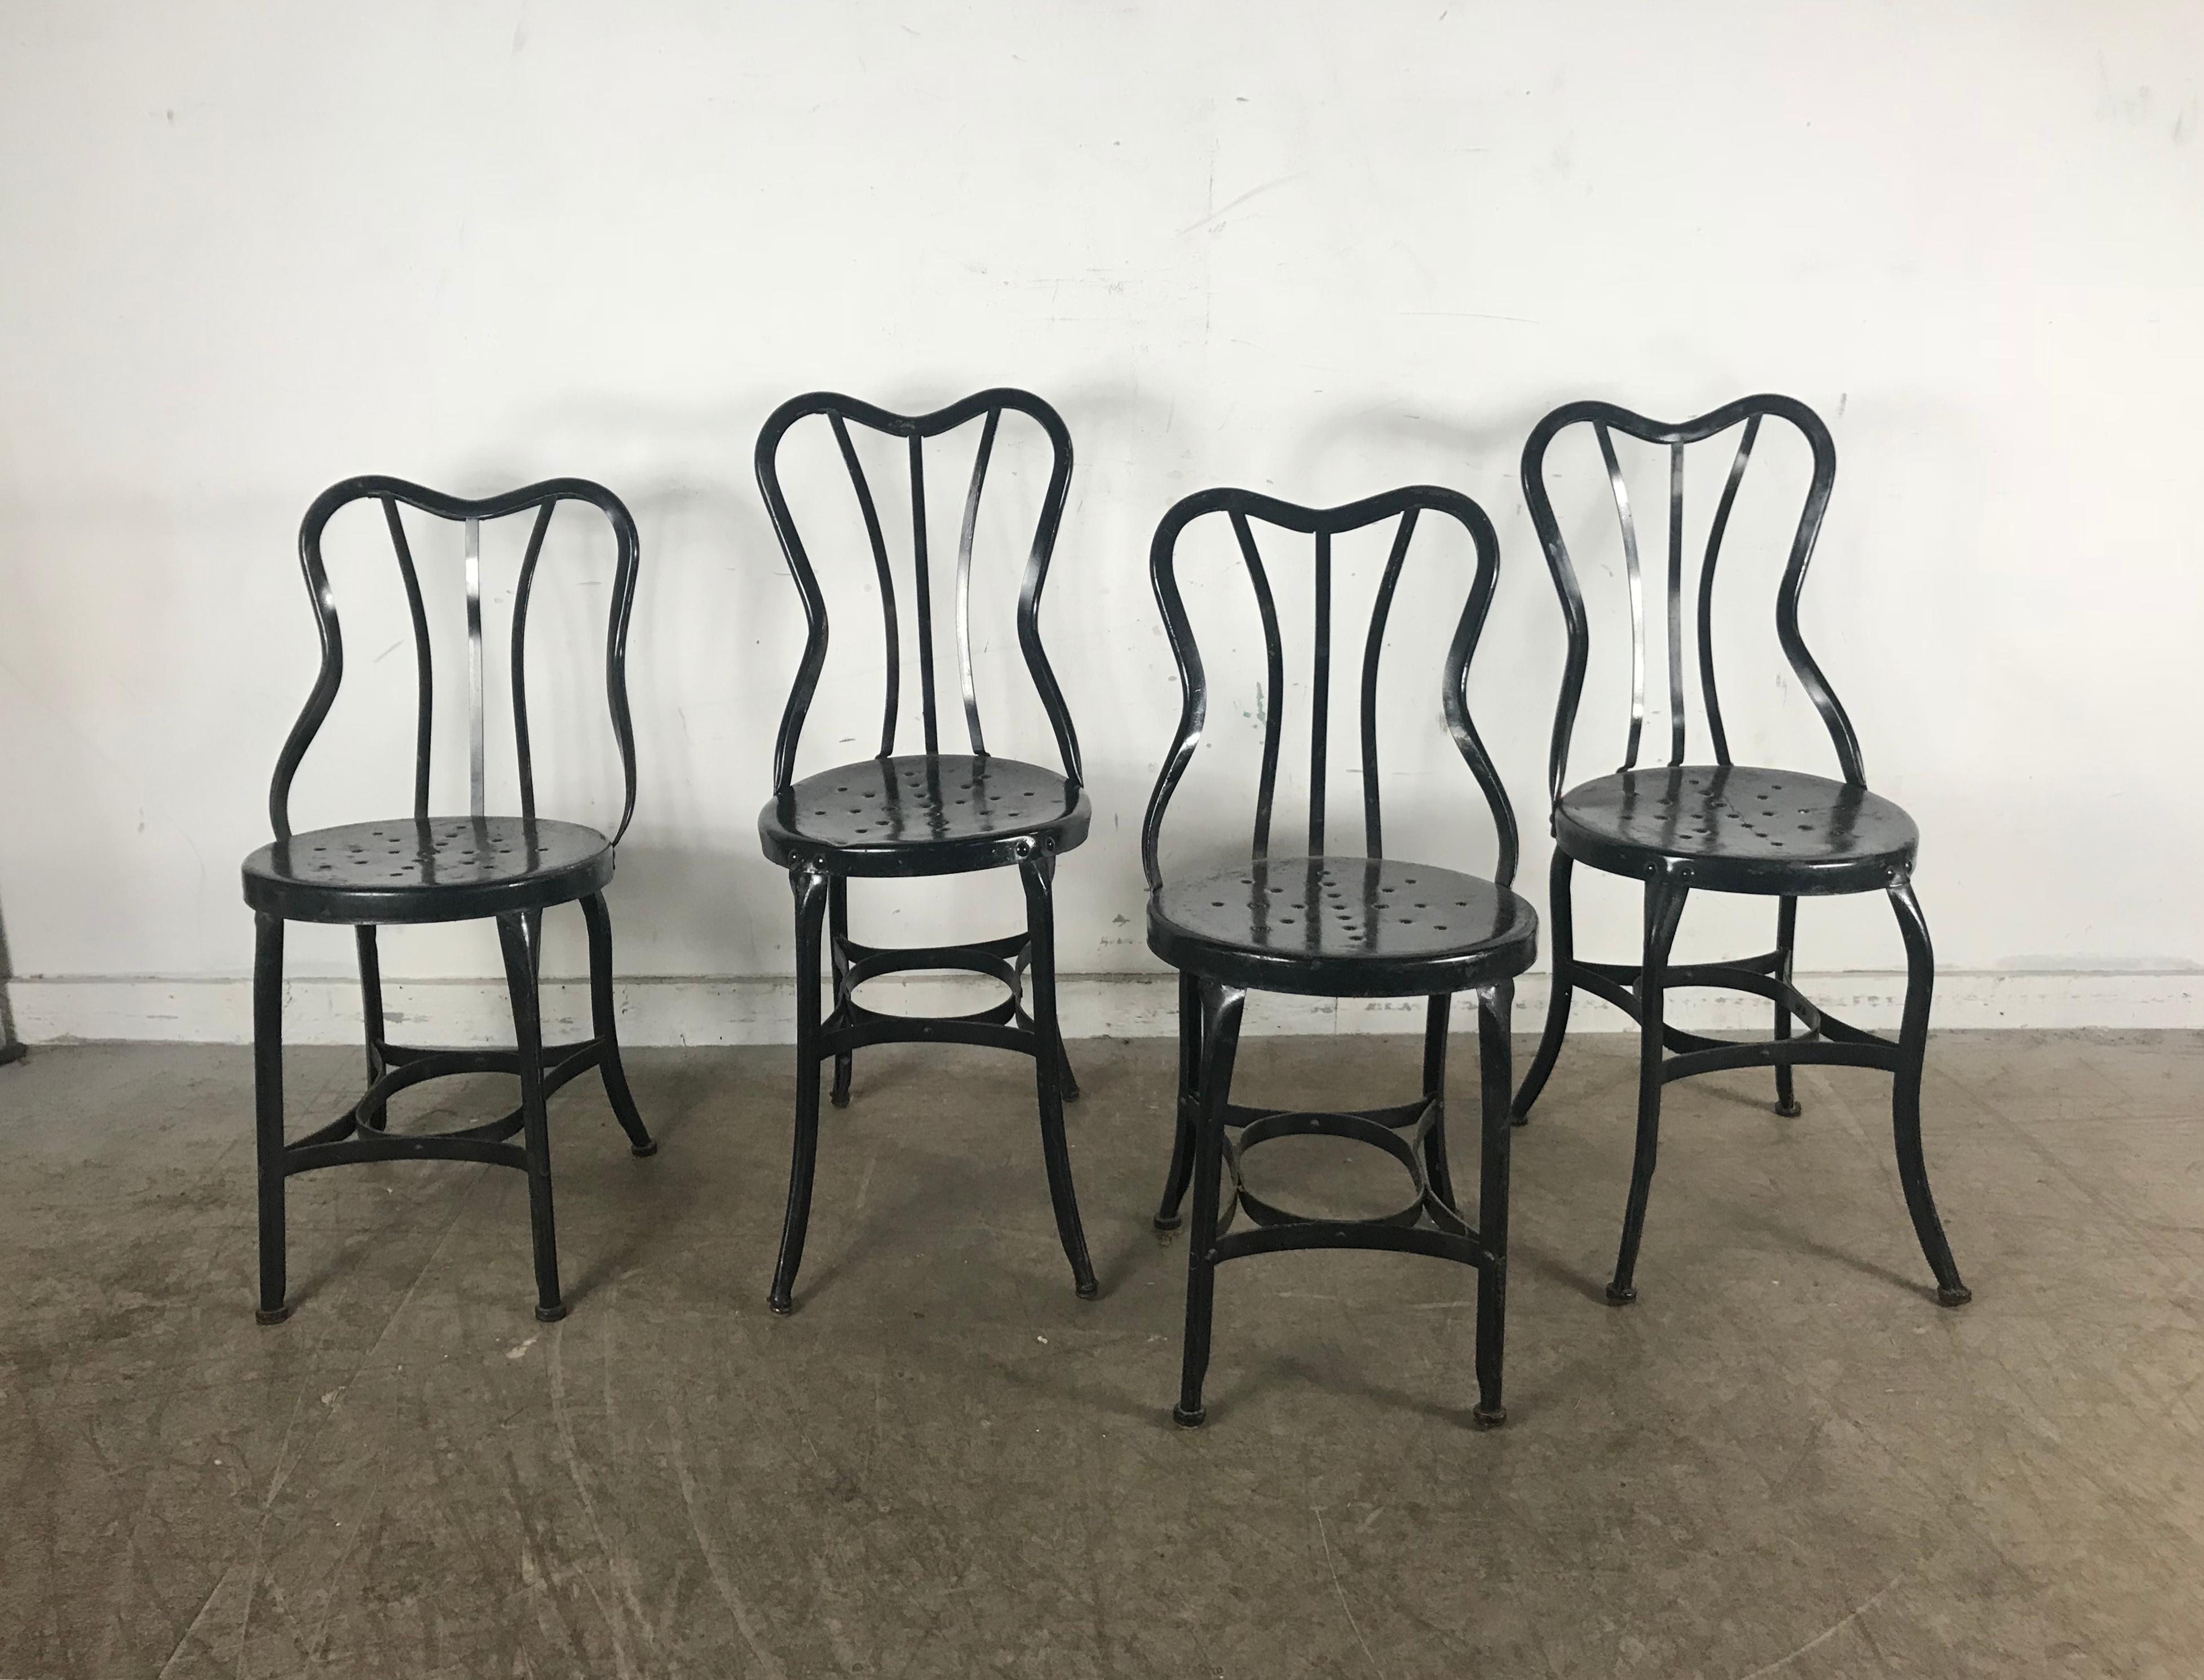 Ensemble de 4 chaises latérales classiques en métal industriel par Ohio Steel, en acier peint sous pression, conservant la finition et la patine d'origine.